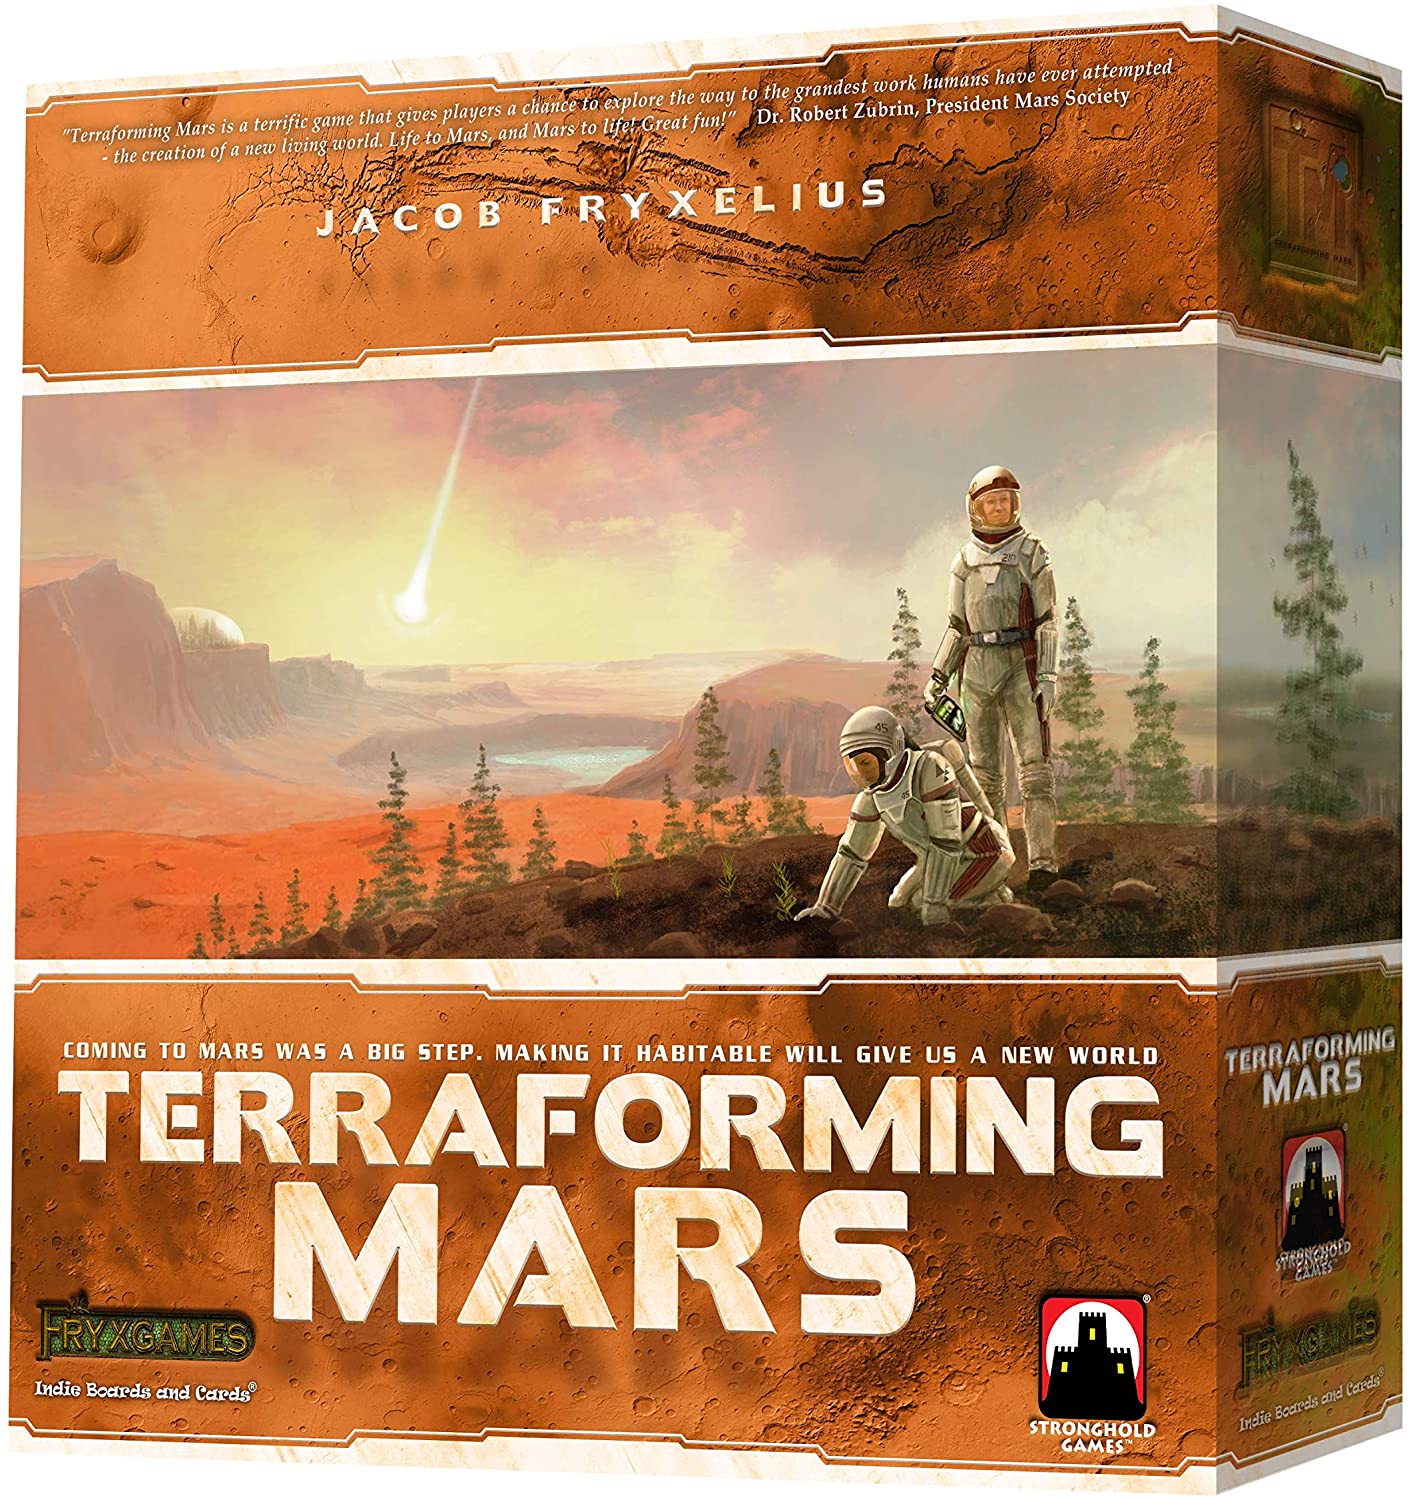 Terraforming Mars By Indie Boards